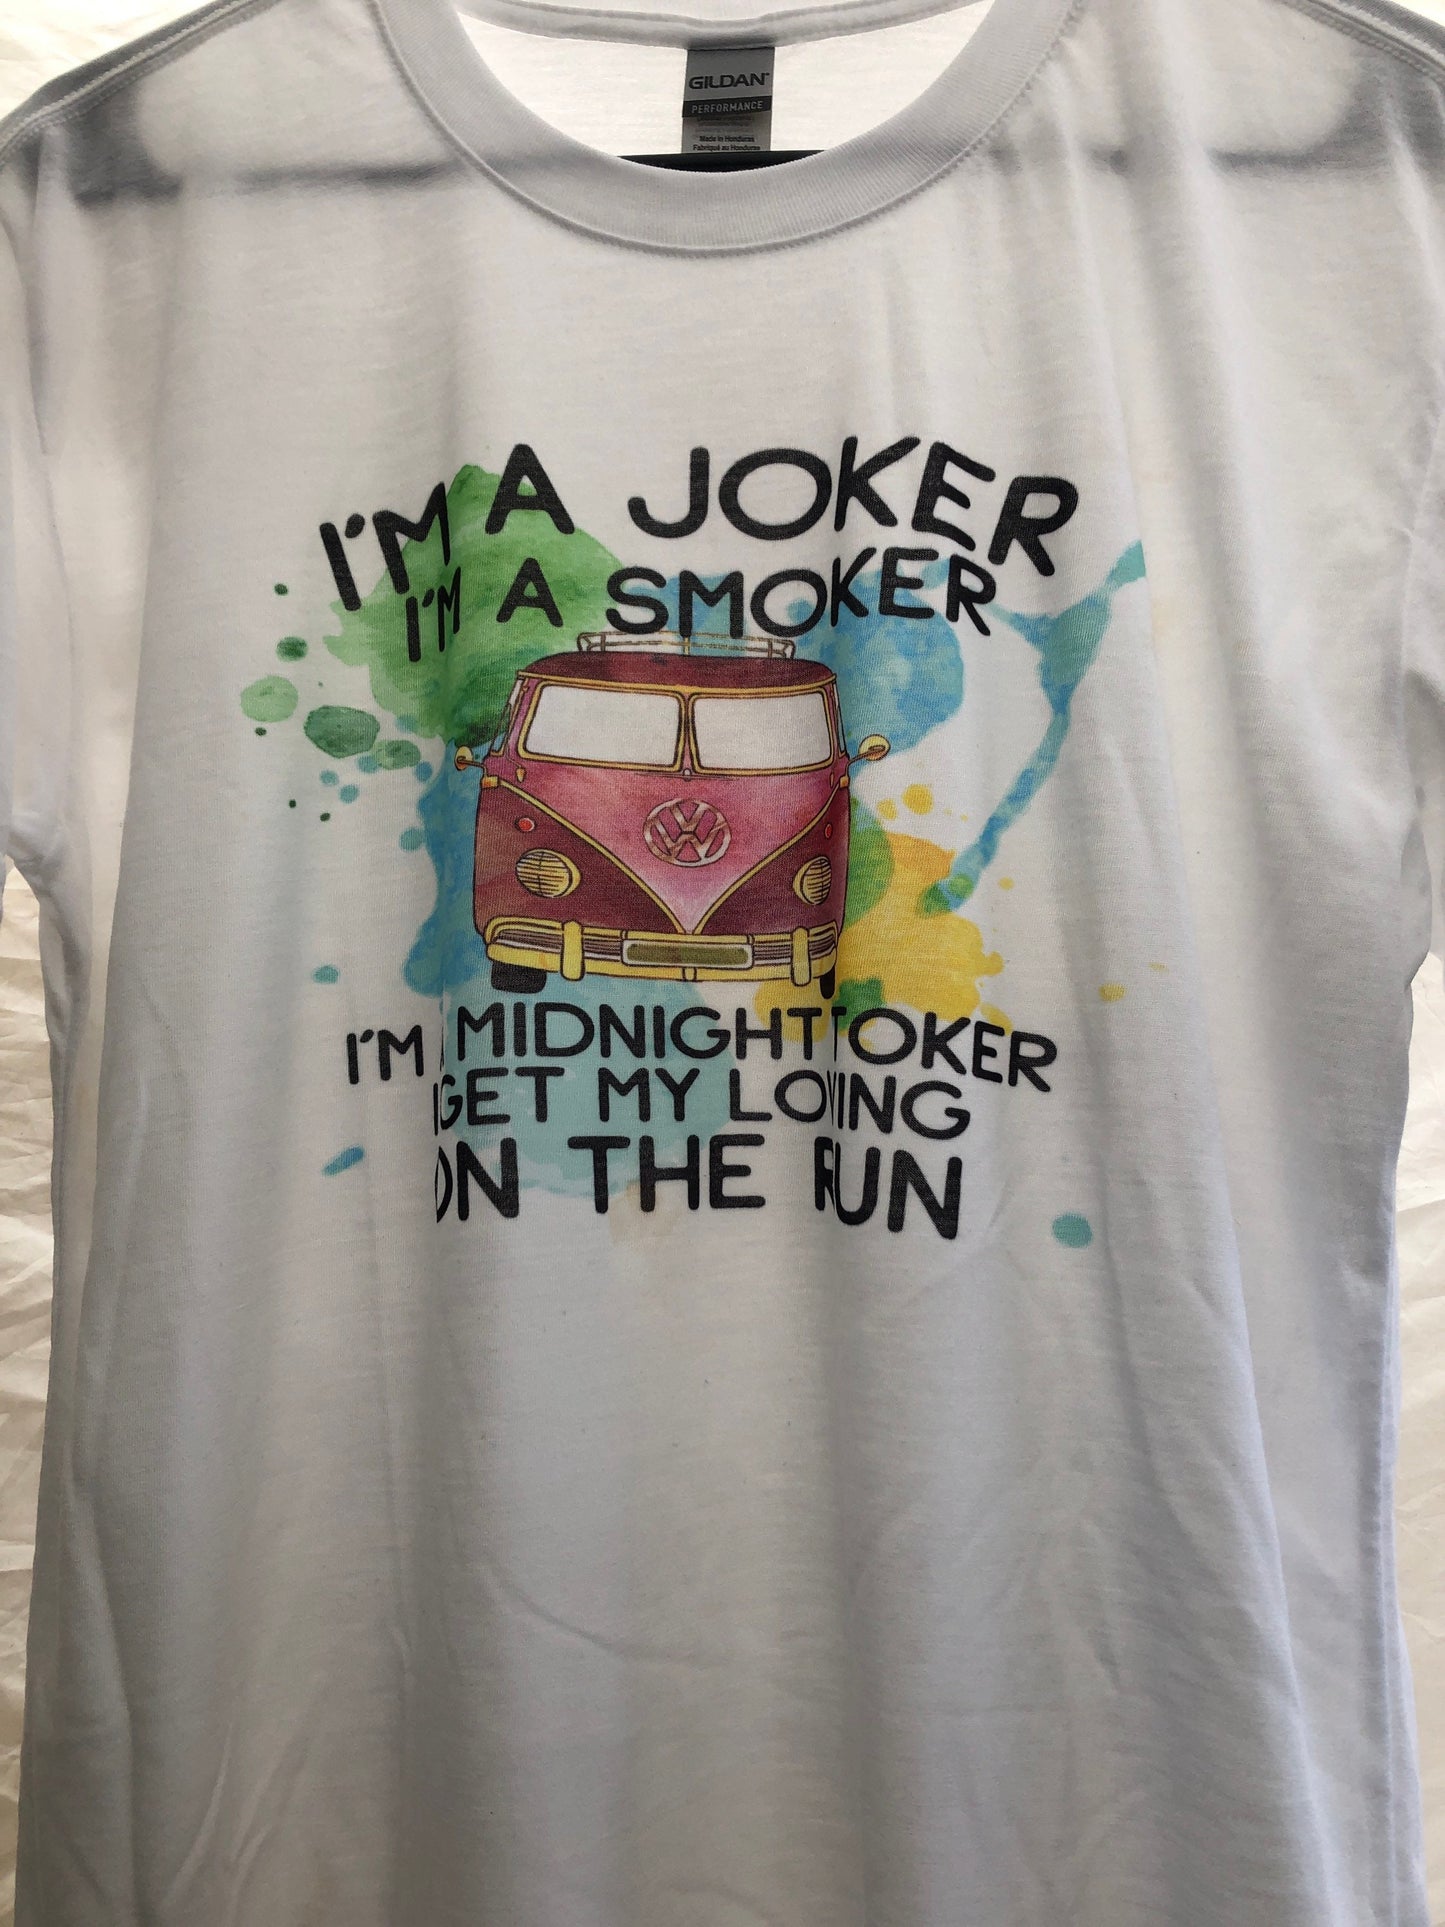 Midnight TOKER Shirt, I'm a joker I'm a Smoker, Steve Miller Band Concert shirt